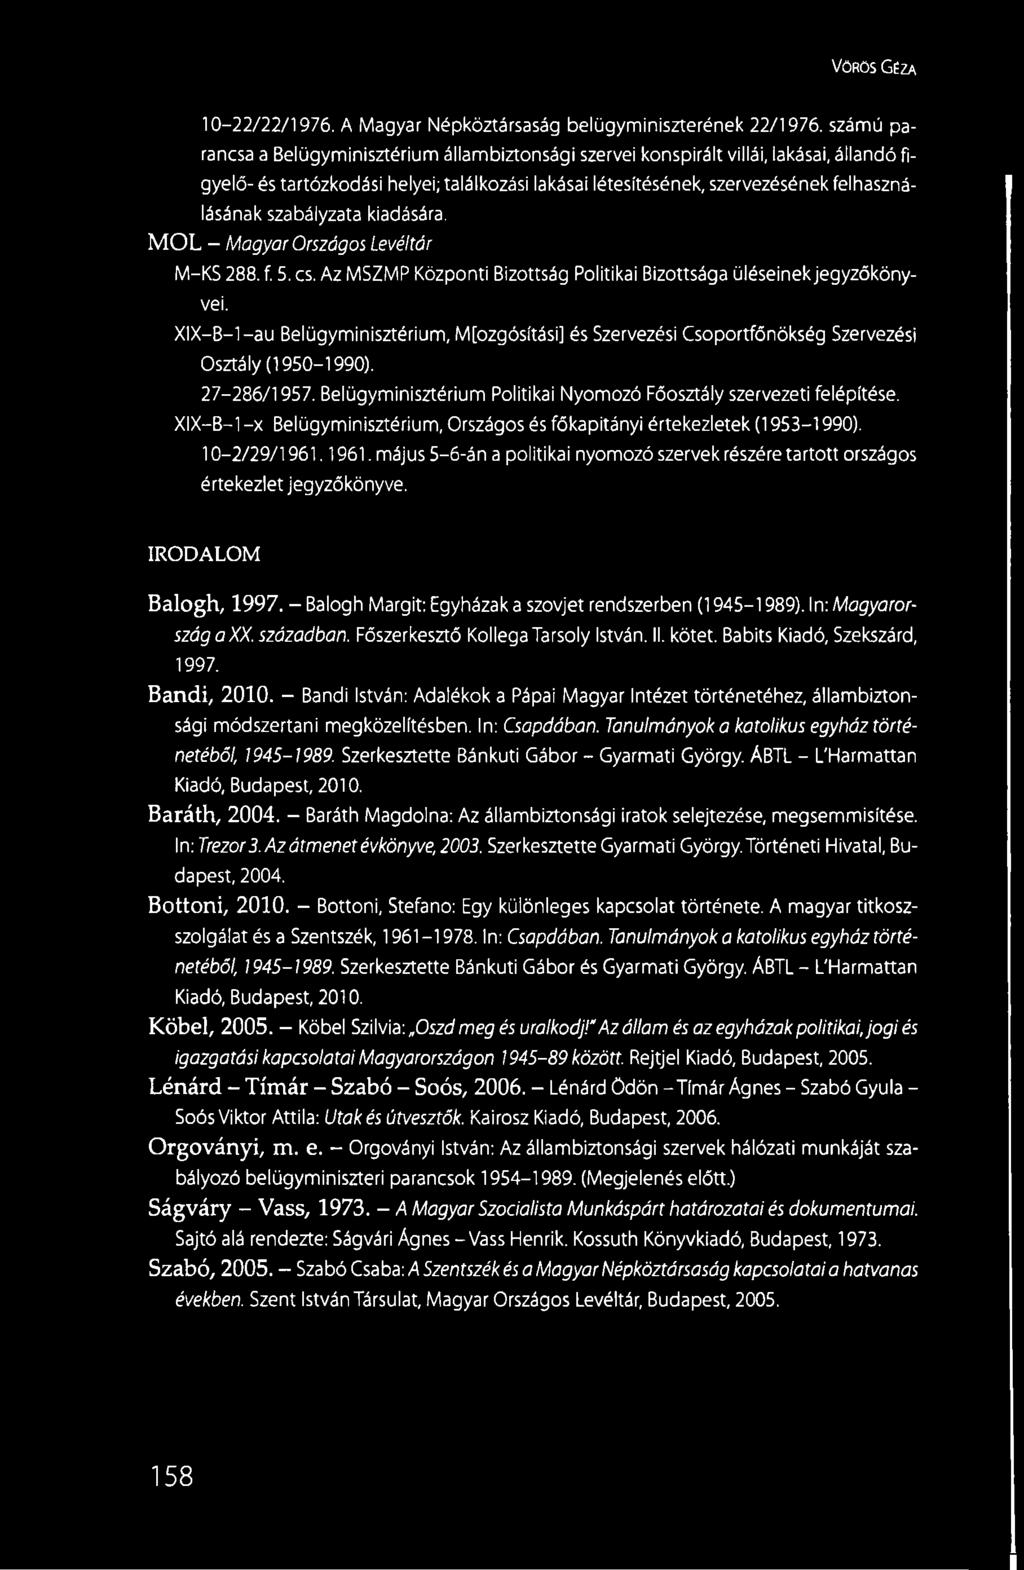 szabályzata kiadására. MÓL - Magyar Országos Levéltár M-KS 288. f. 5. cs. Az MSZMP Központi Bizottság Politikai Bizottsága üléseinek jegyzőkönyvei.